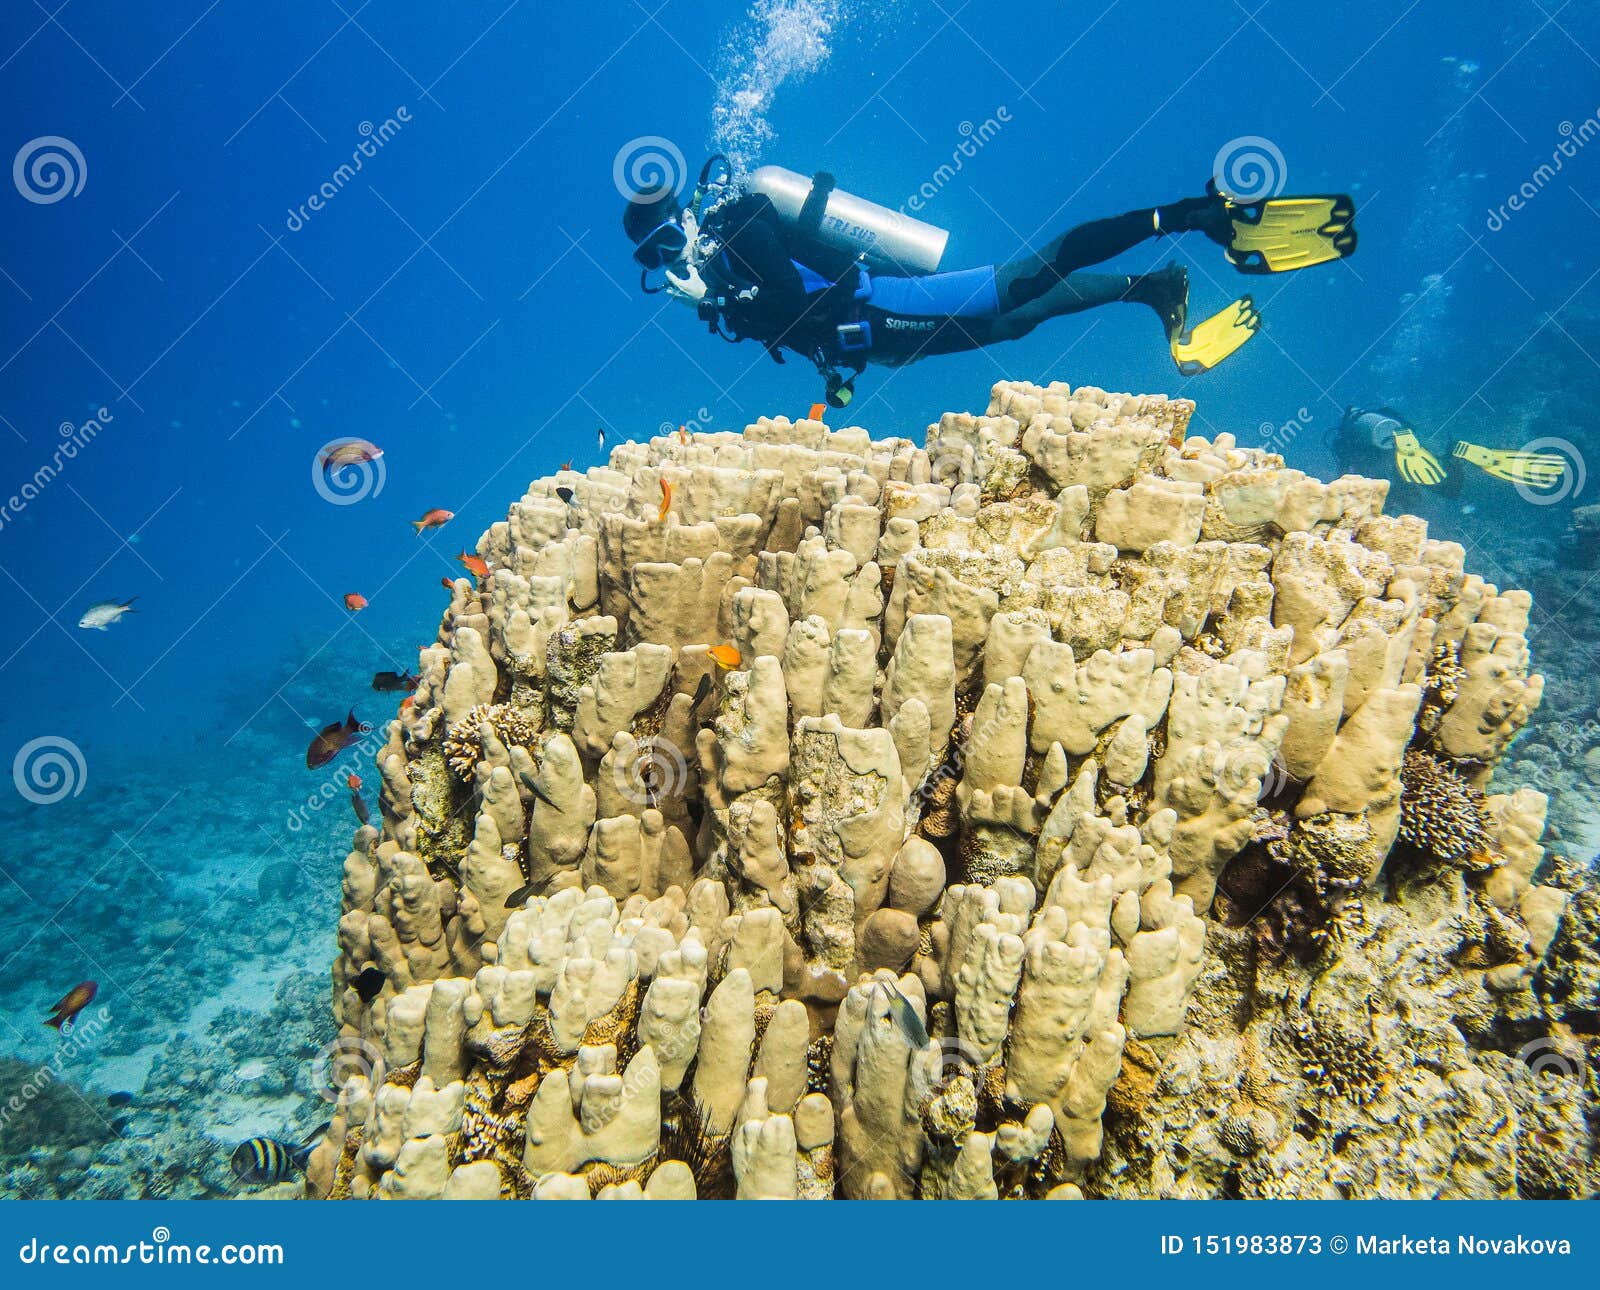 Scuba Diving in Red Sea, Jordan Stock Image Image of diving, hobby: 151983873